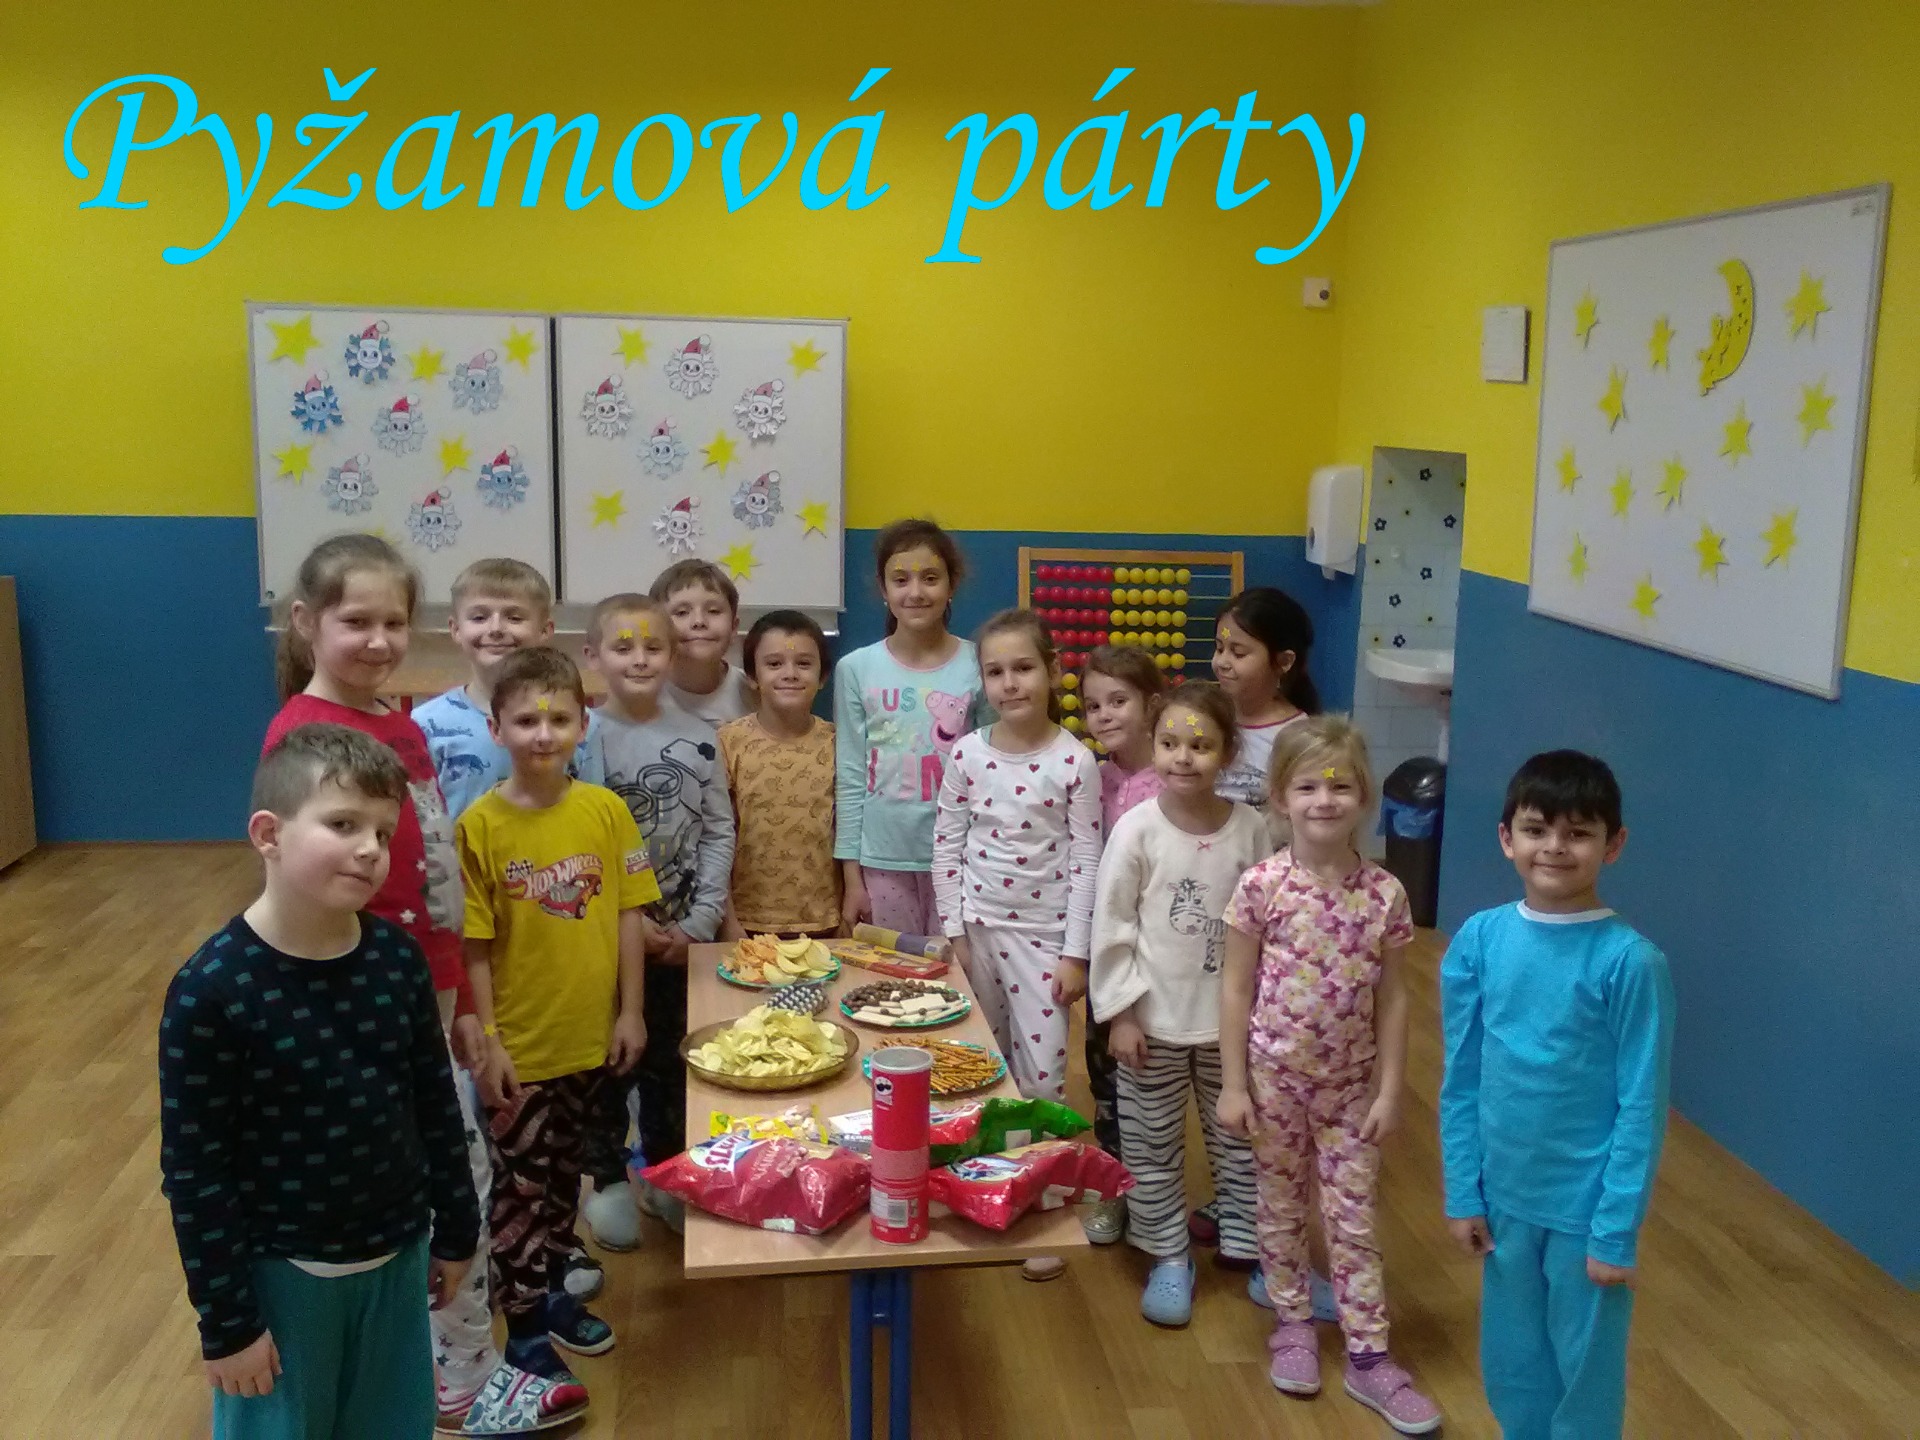 Pyžamová párty - Obrázok 1